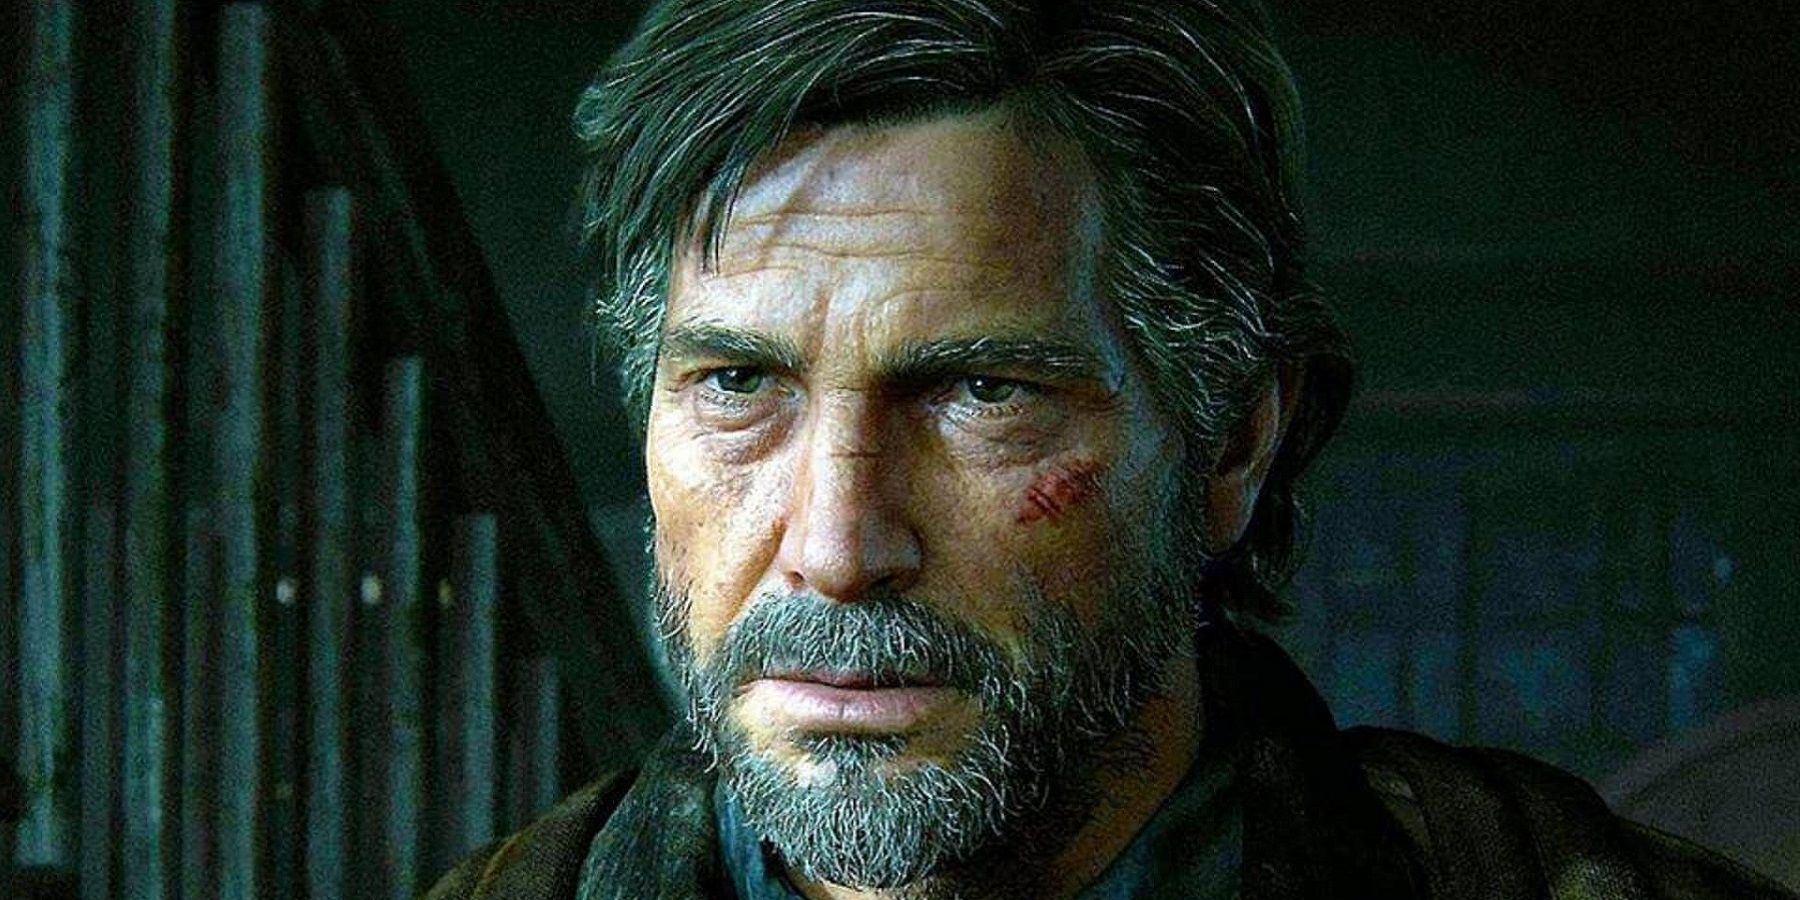 Изображение из ремейка The Last of Us Part 1, показывающее Чола крупным планом